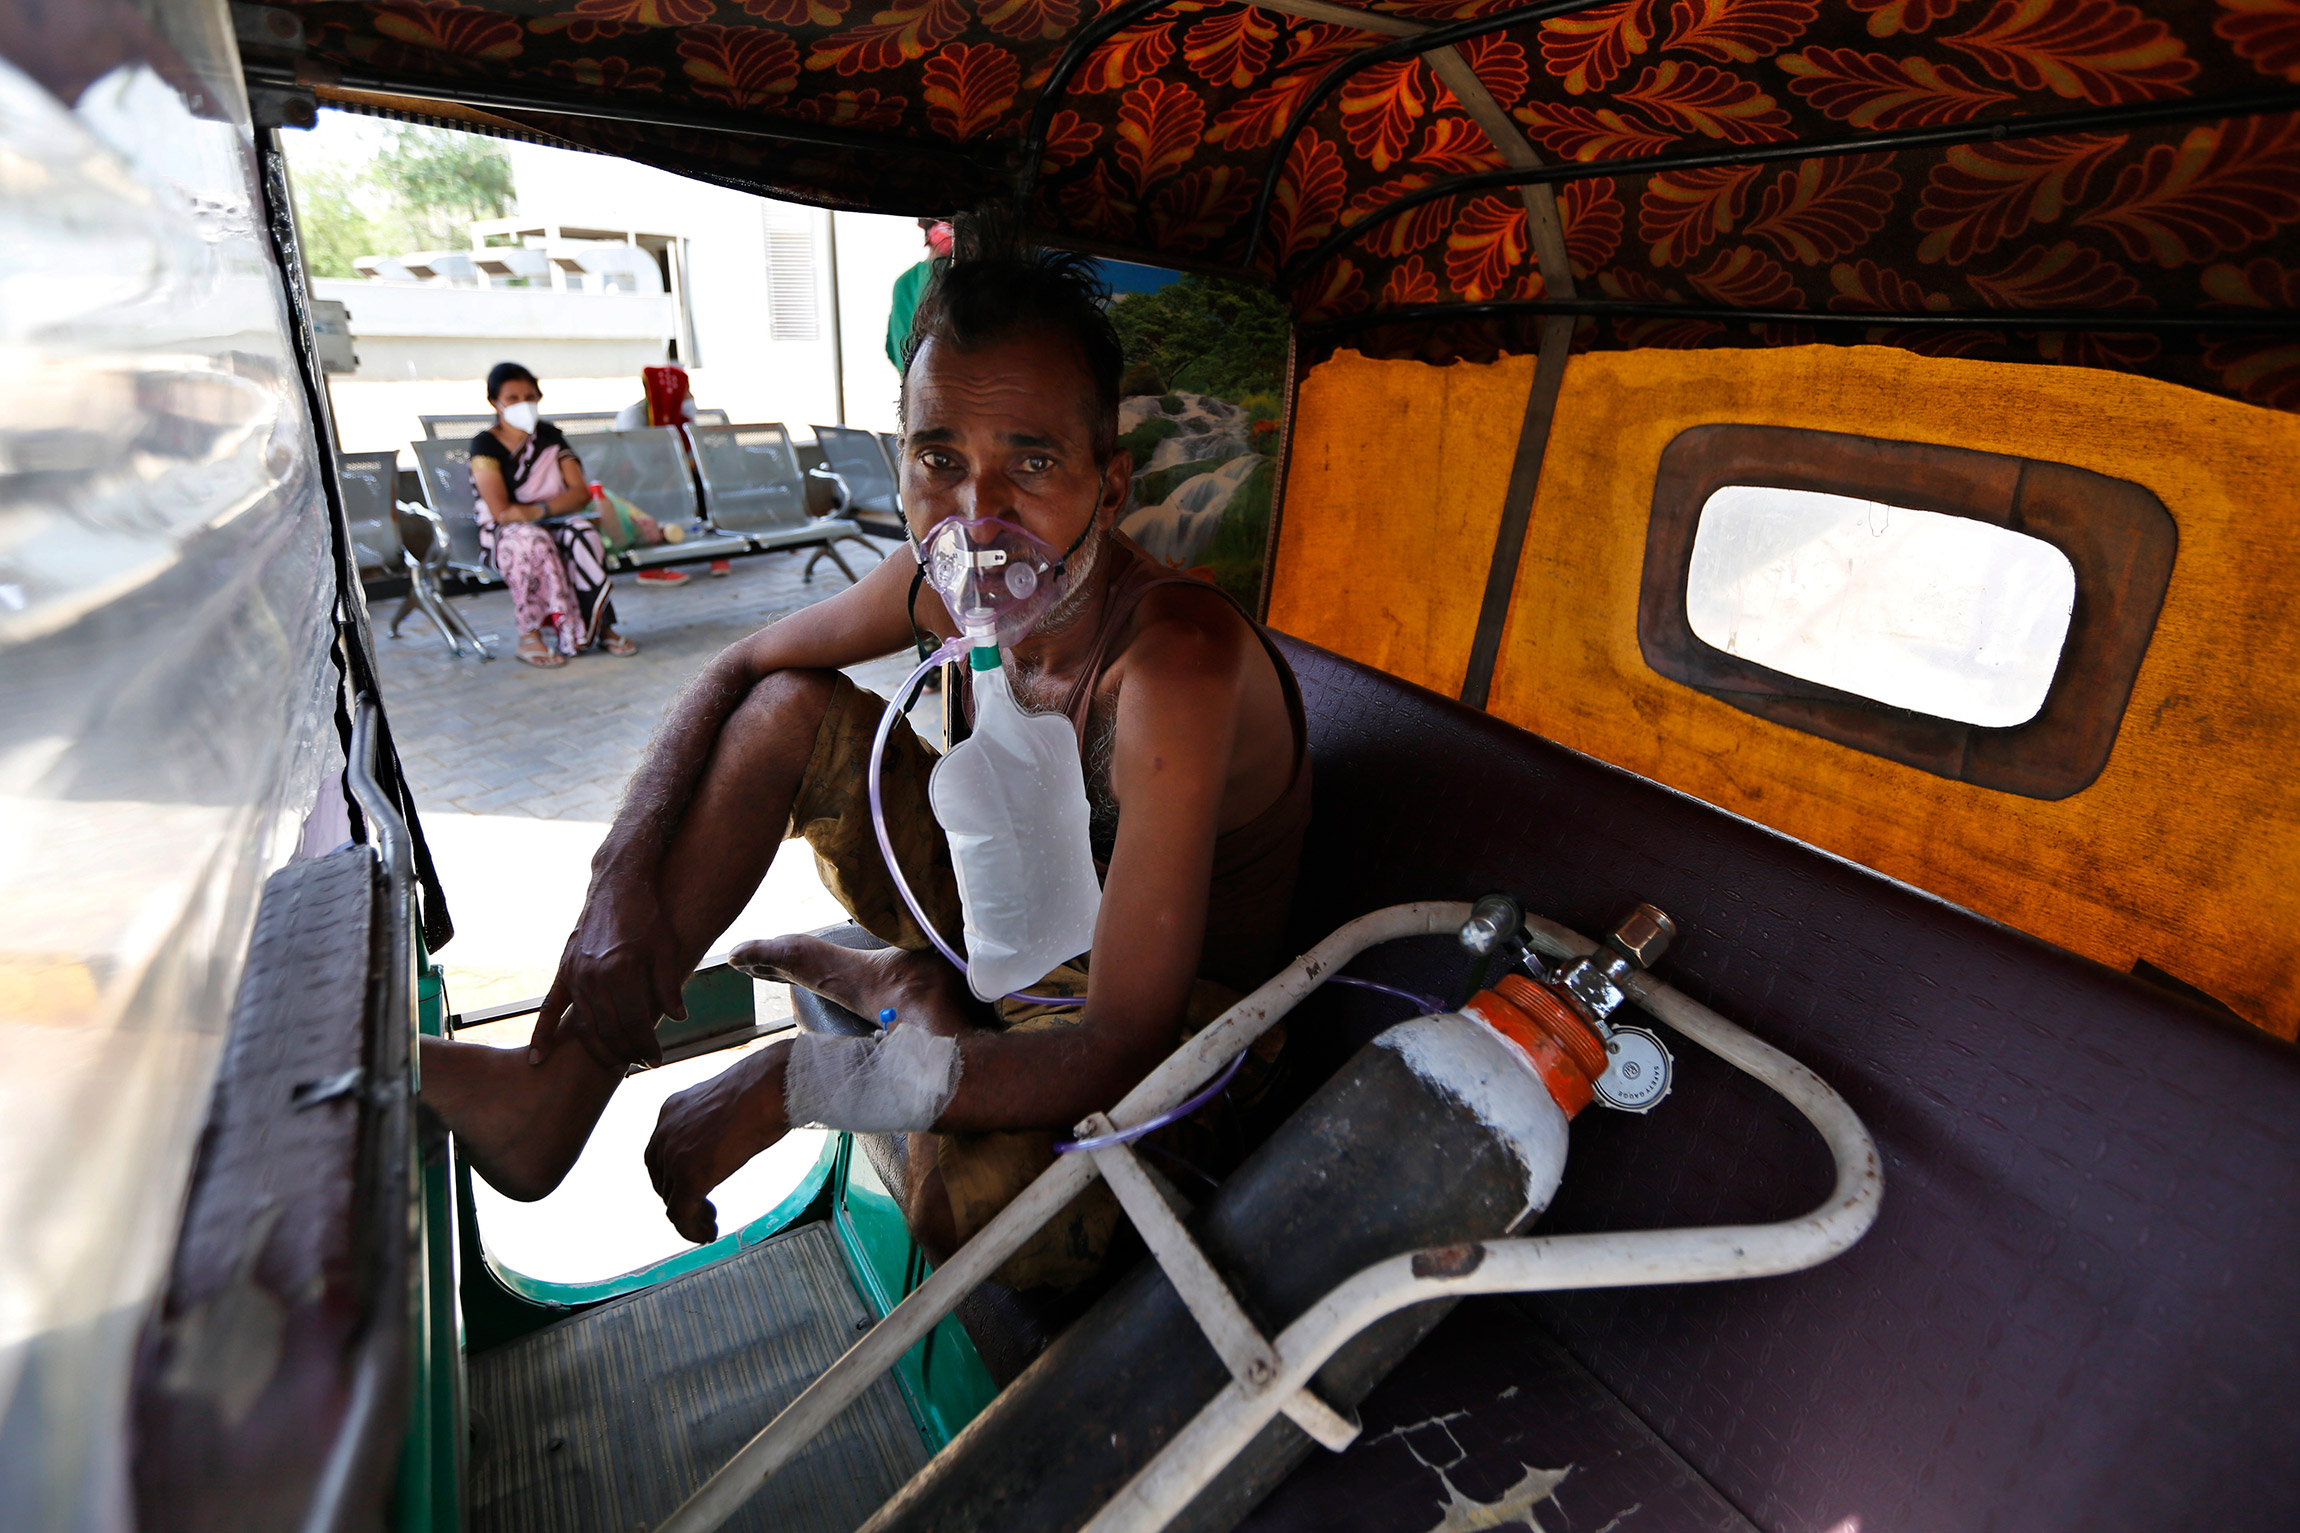 Мужчина в кислородной маске ждет, когда его поместят в коронавирусную больницу в Ахмедабаде.

Несколько дней подряд в Индии выявляют более 300 тыс. новых случае заражения COVID-19, это мировой рекорд. Прошлый был установлен США в январе&nbsp;&mdash; 297 тыс. выявленных больных за день